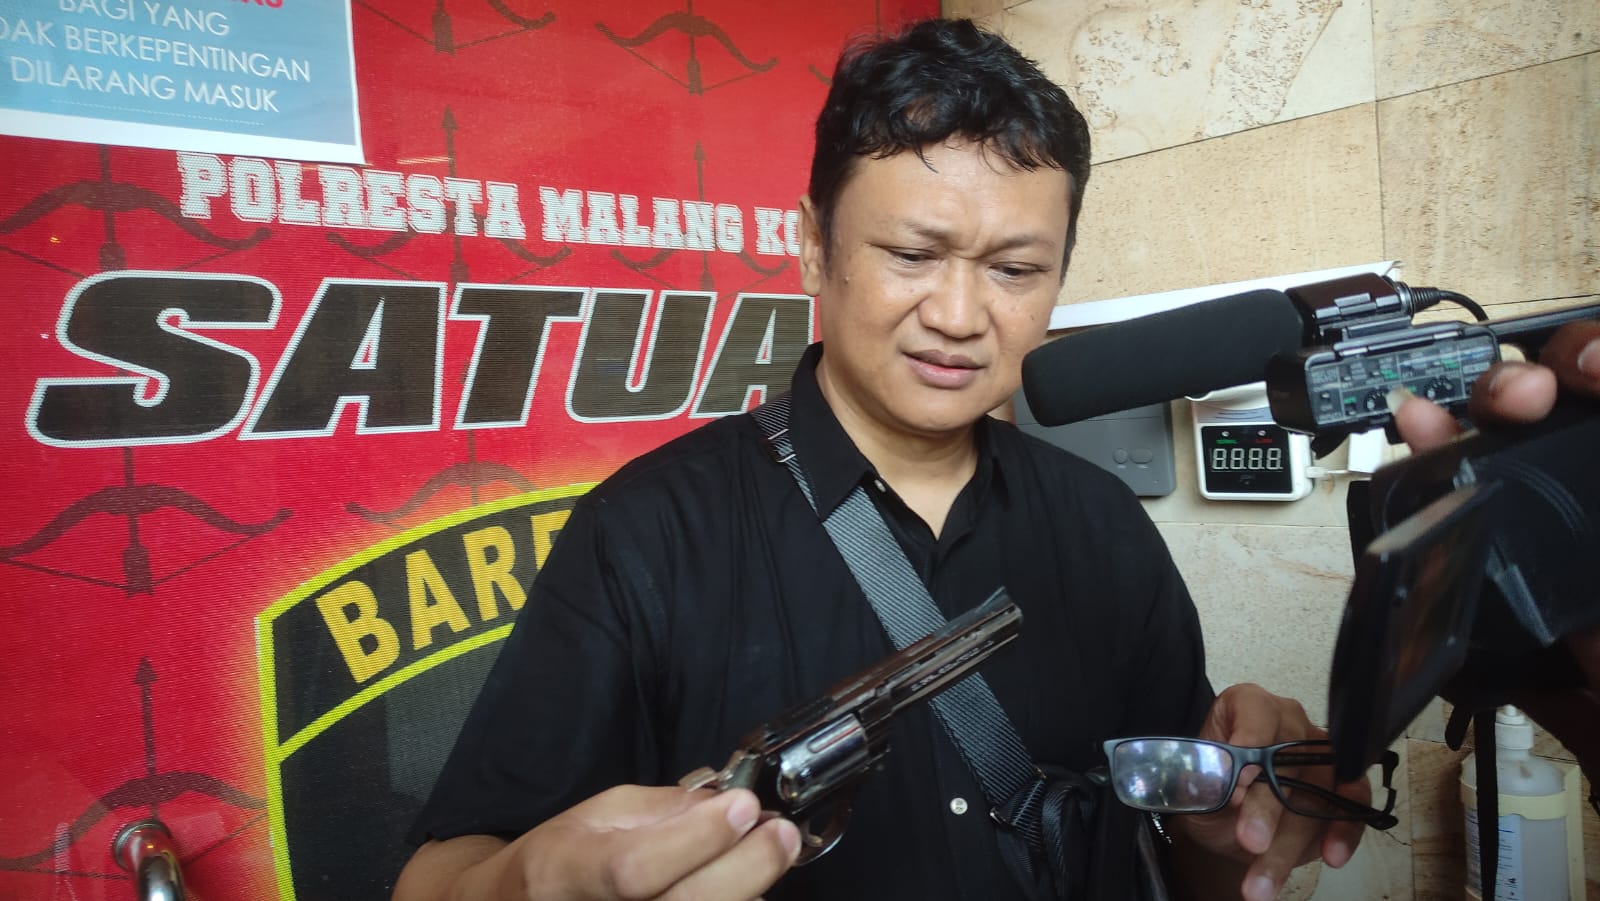 Hadapi Rampok di Sawojajar, Bambang Rukminto Rebut Pistol Mainan Pelaku